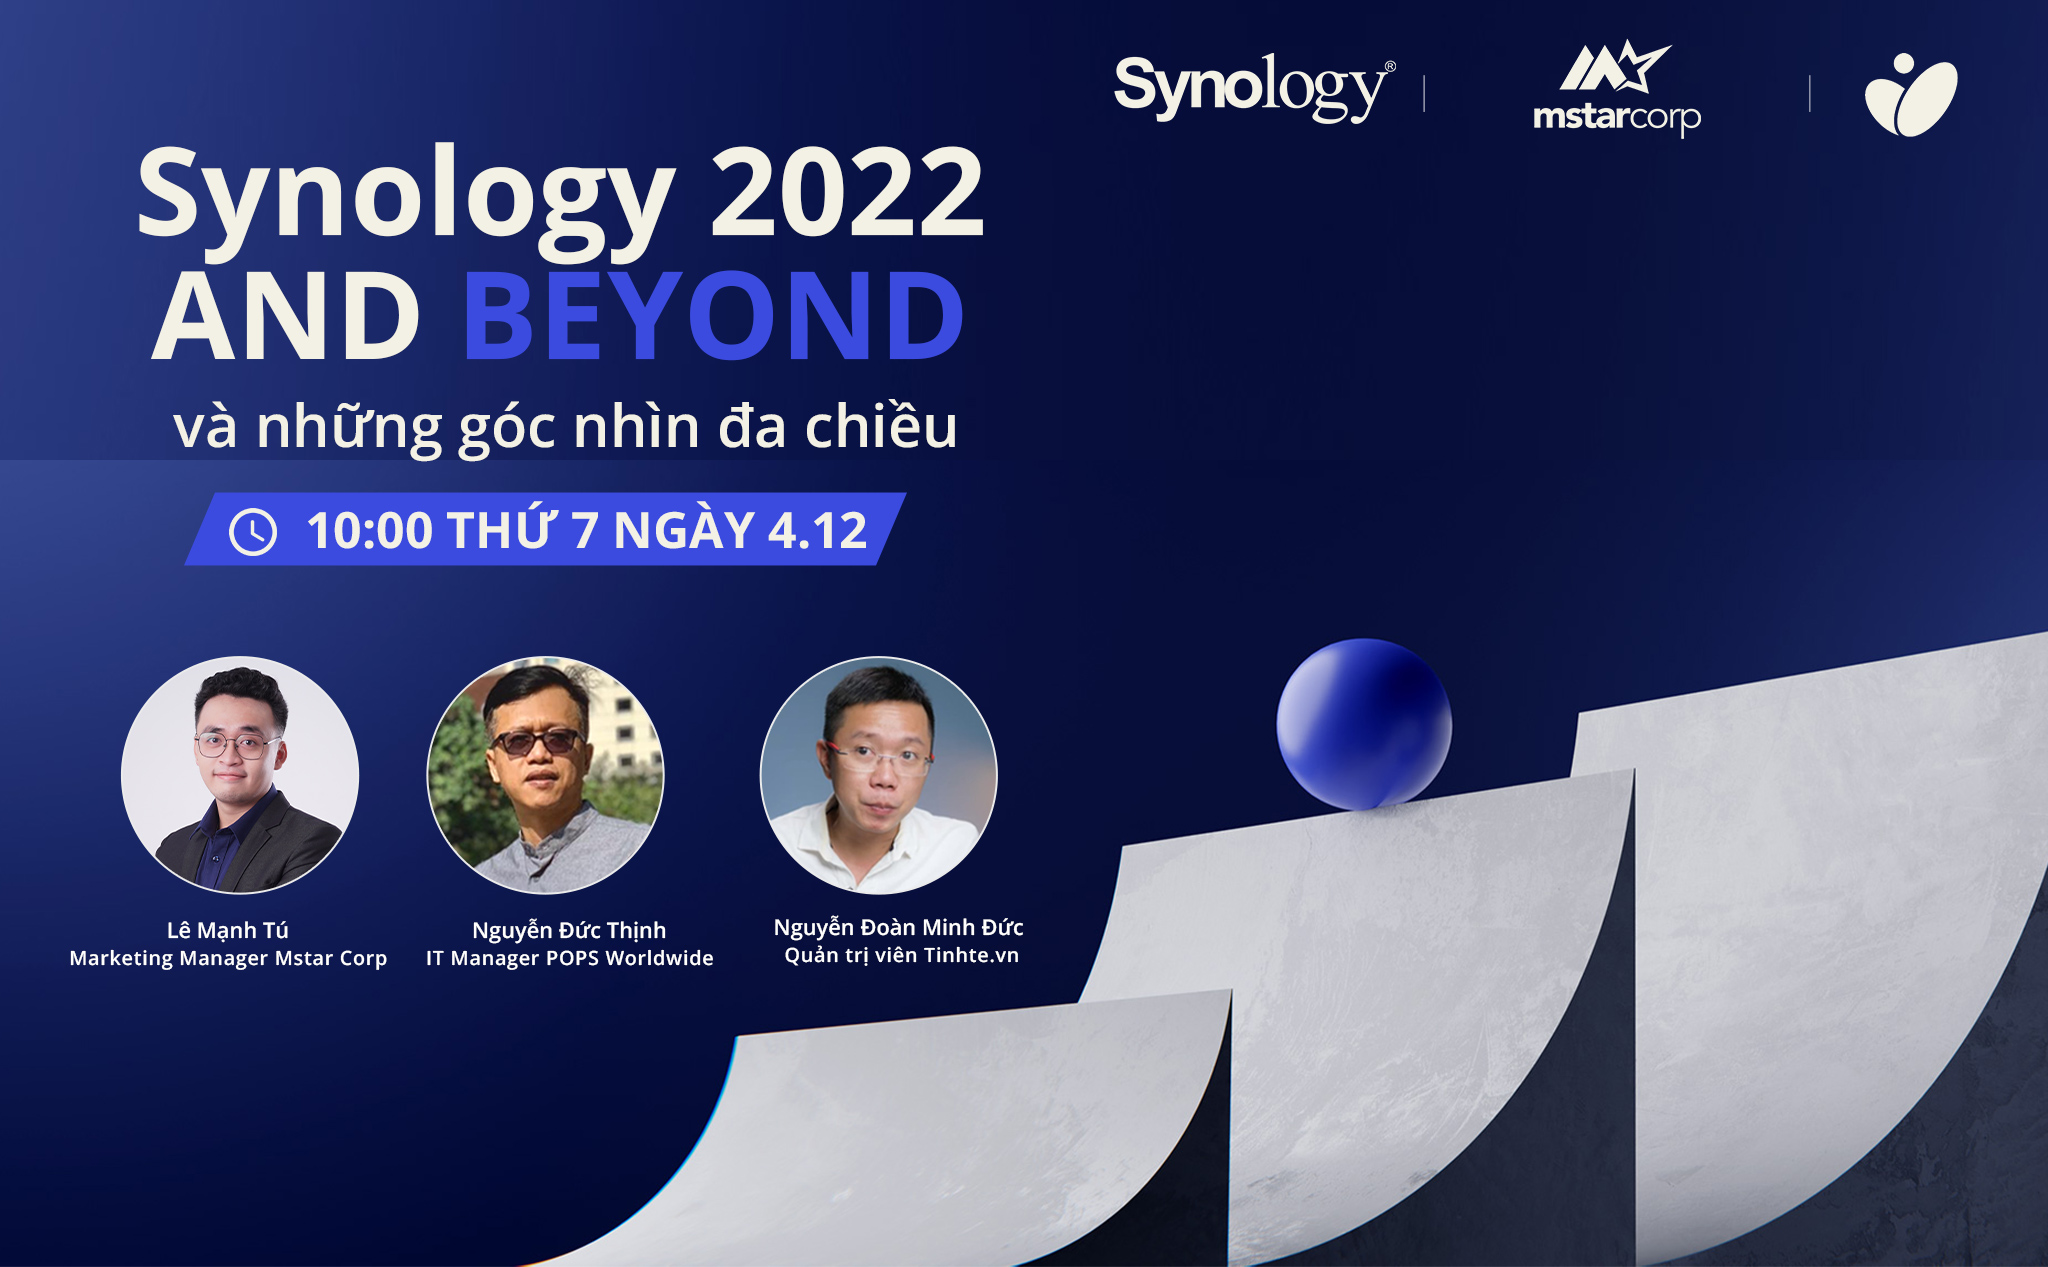 10h sáng mai, cùng xem sự kiện Synology ra mắt sản phẩm mới, trò chuyện về phần cứng và phần mềm